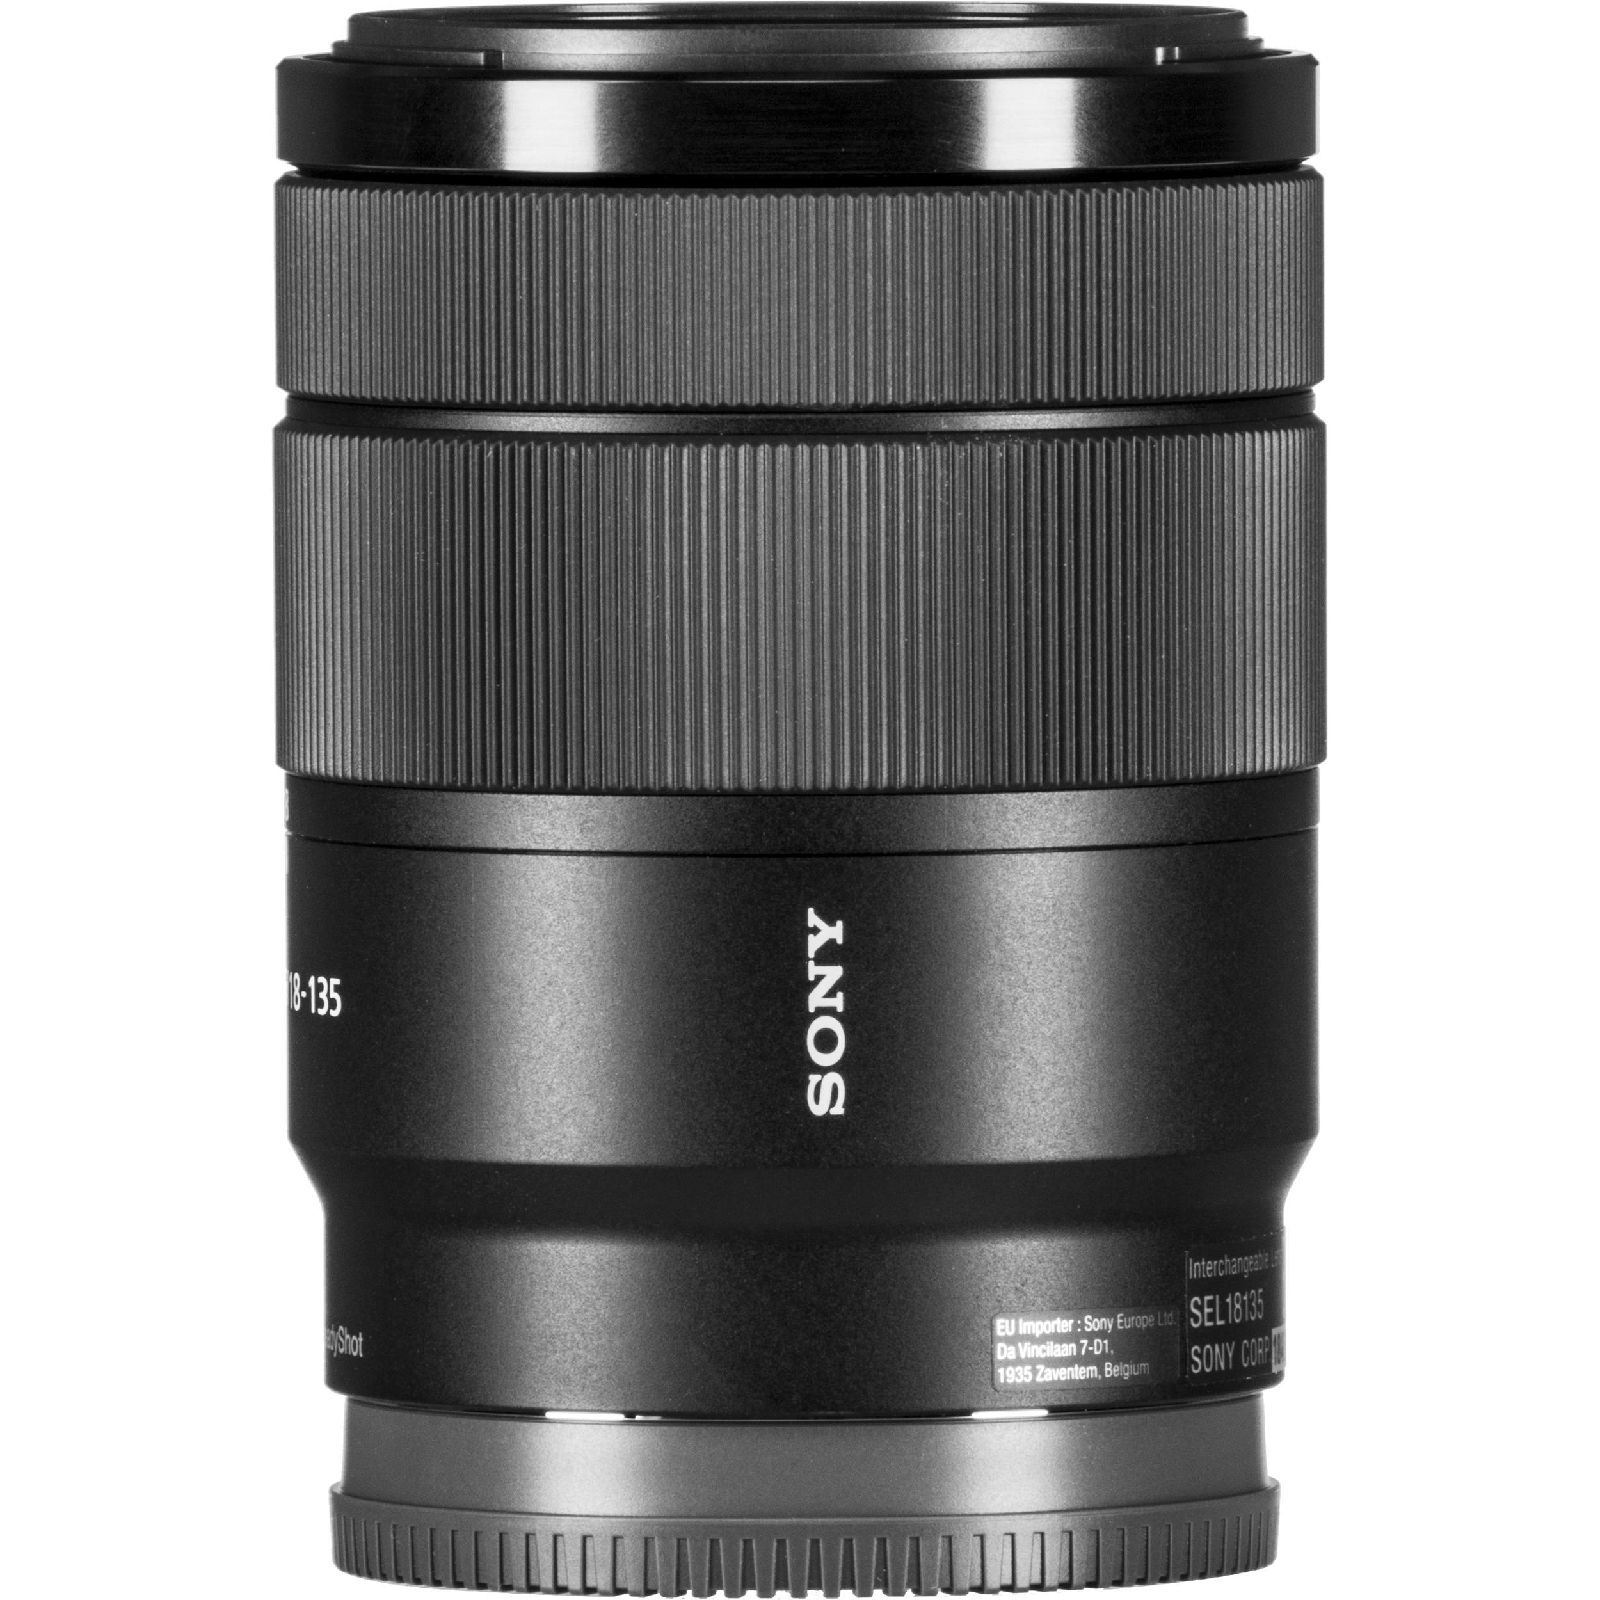 Sony E 18-135mm f/3.5-5.6 OSS Allround objektiv za E-Mount 18-135 F3.5-5.6 F3,5-5,6 SEL-18135 SEL18135 (SEL18135.SYX)